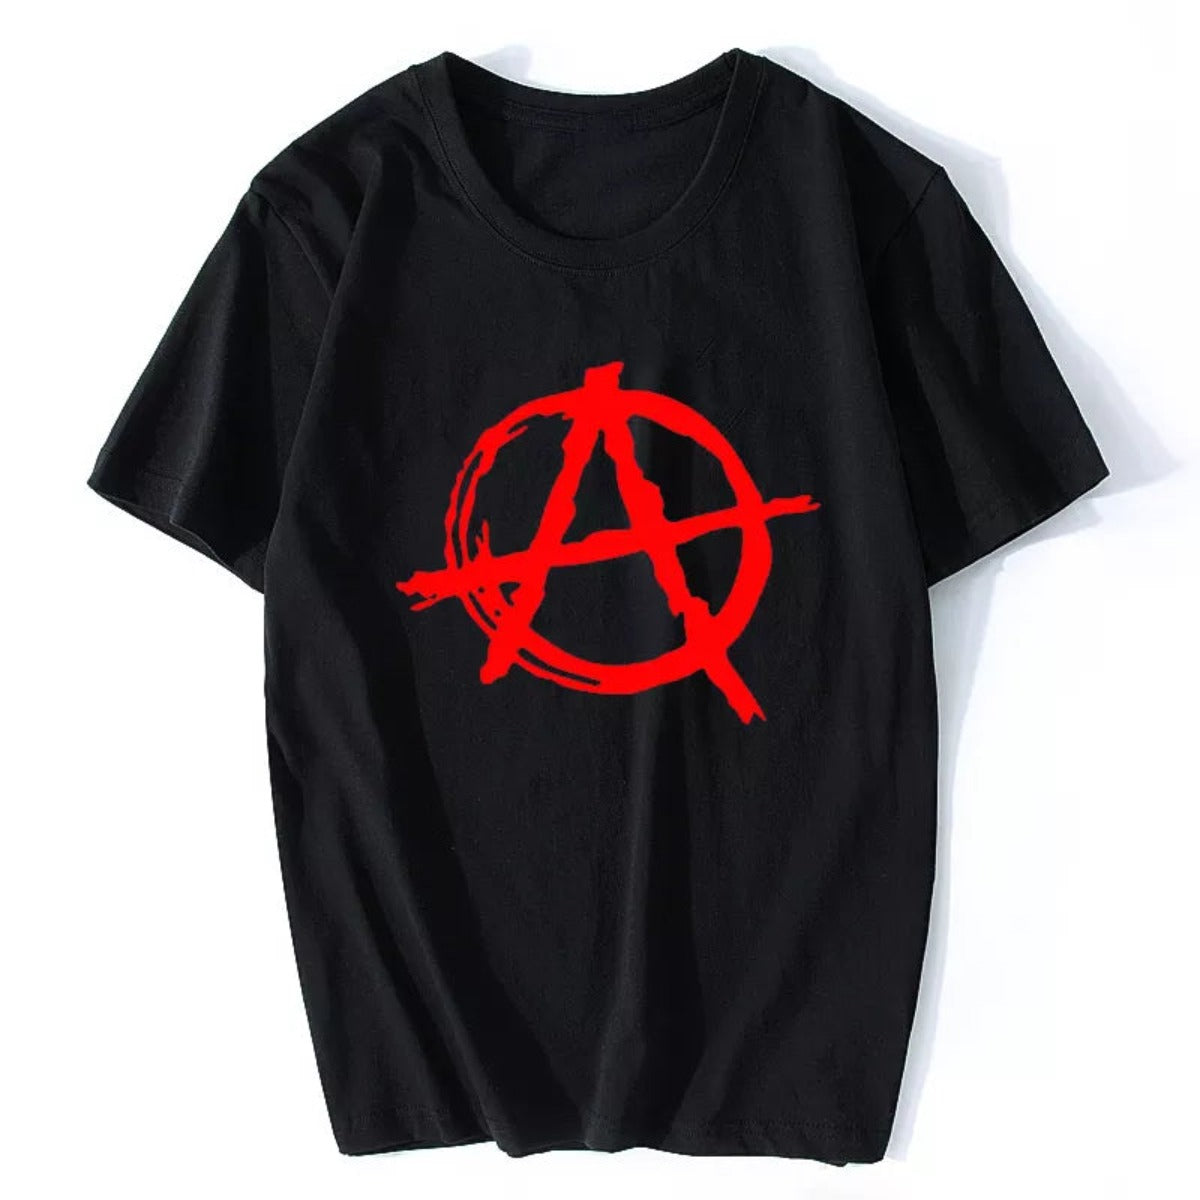 Anarchy Symbol T Shirt - Punk Rock T Shirt Bedlam Evil Anarchist War Rocker Cotton Cool Hip Hop O Neck  Men T Shirt